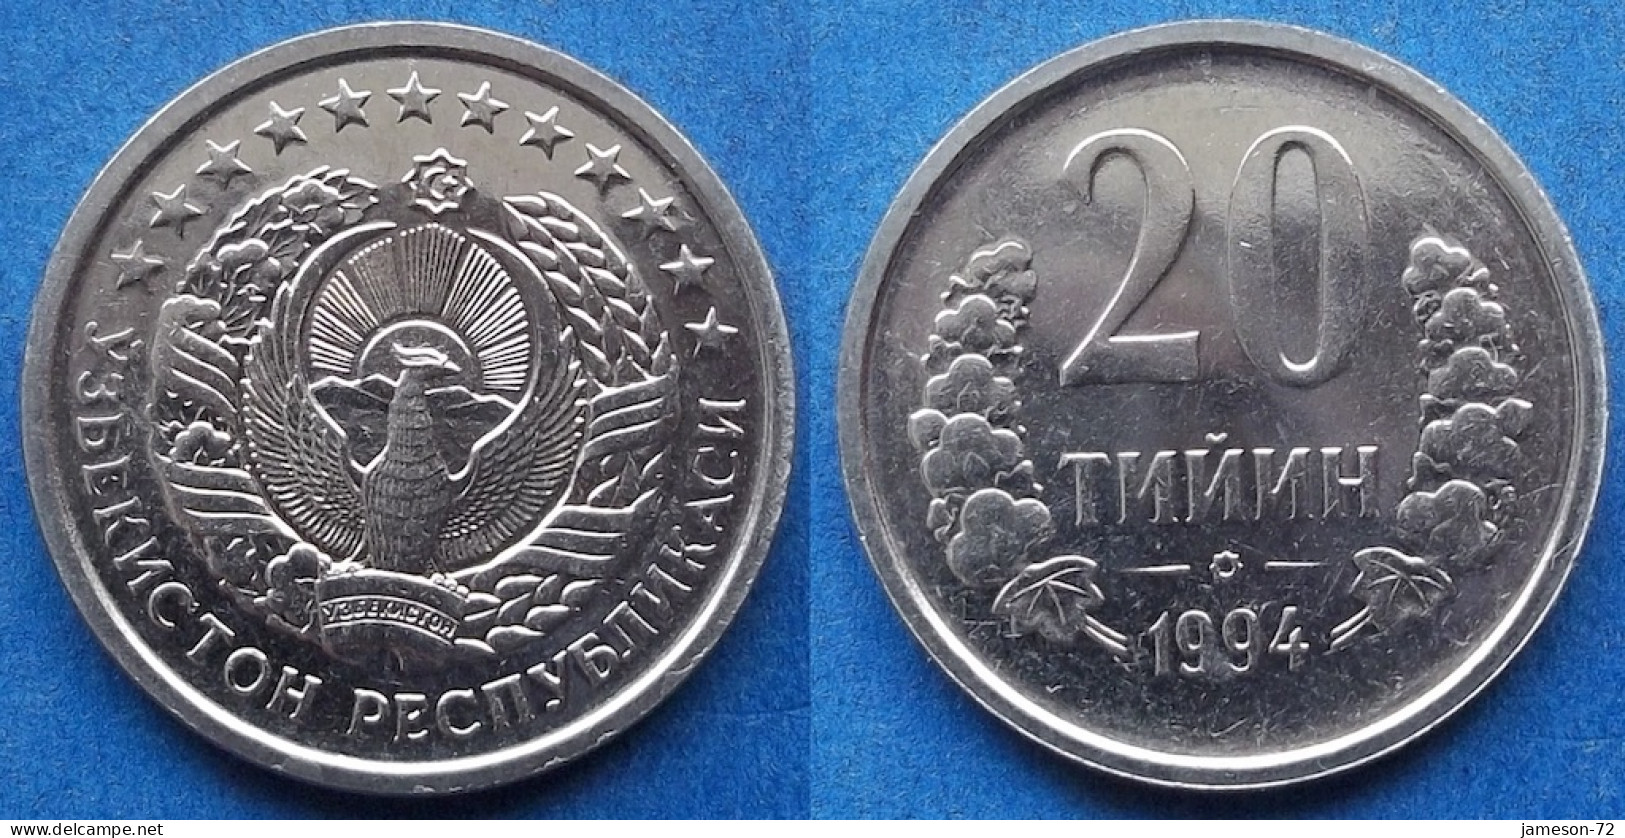 UZBEKISTAN - 20 Tiyin 1994 KM# 5 Independent Republic (1991) - Edelweiss Coins - Uzbekistan